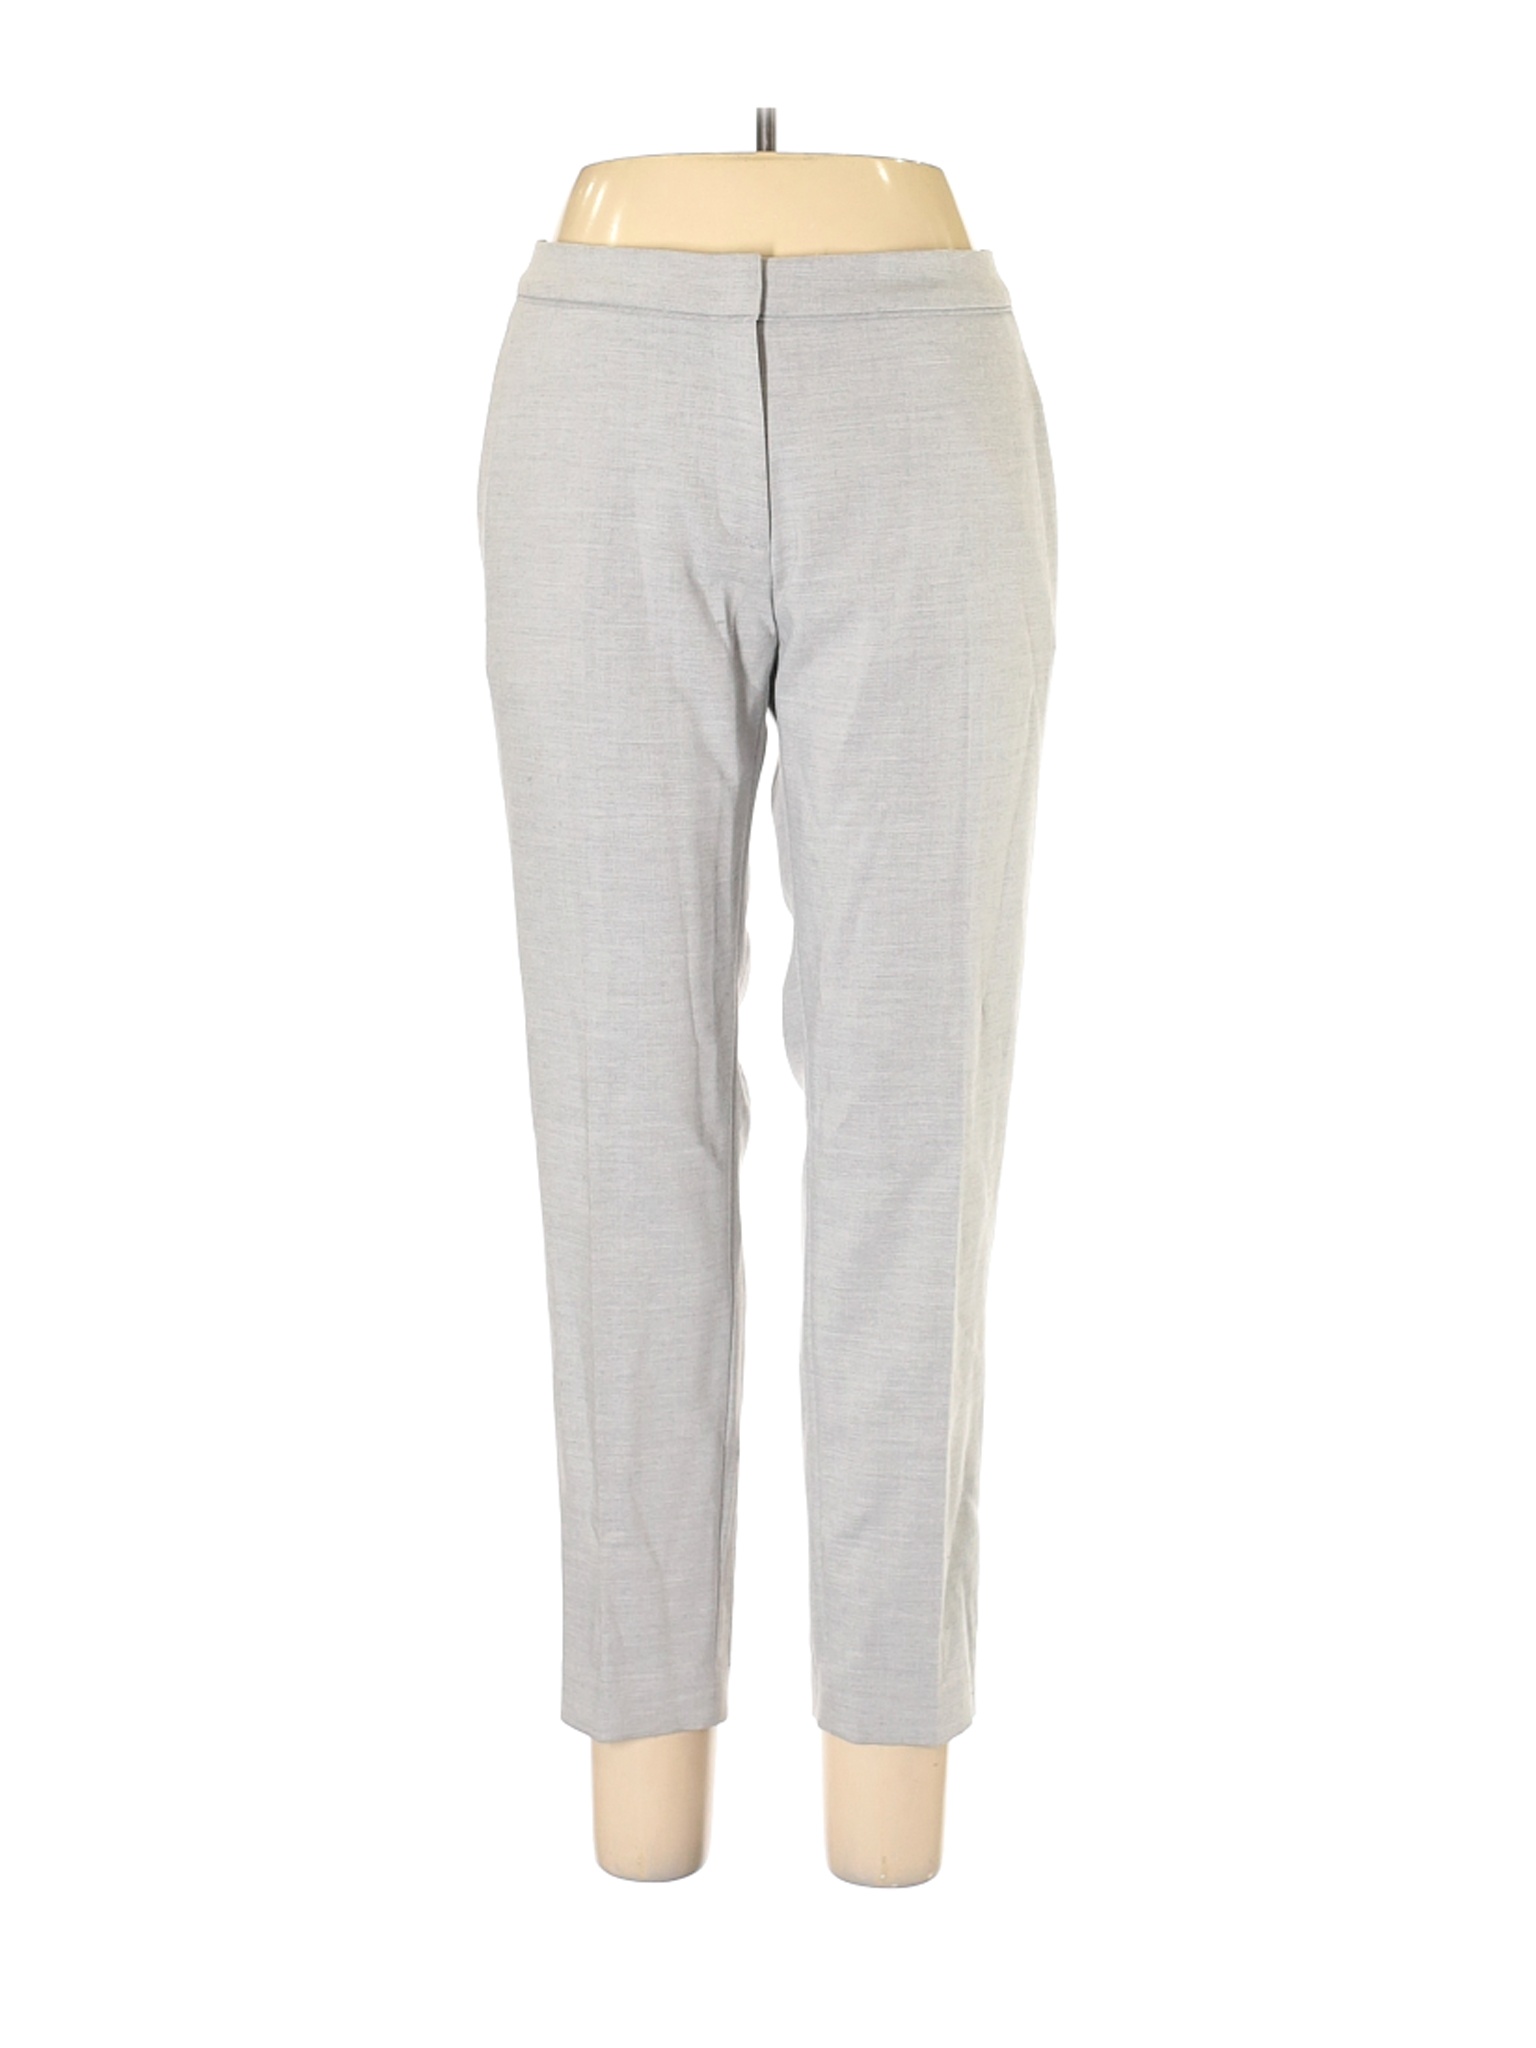 NWT H&M Women Gray Dress Pants 12 | eBay